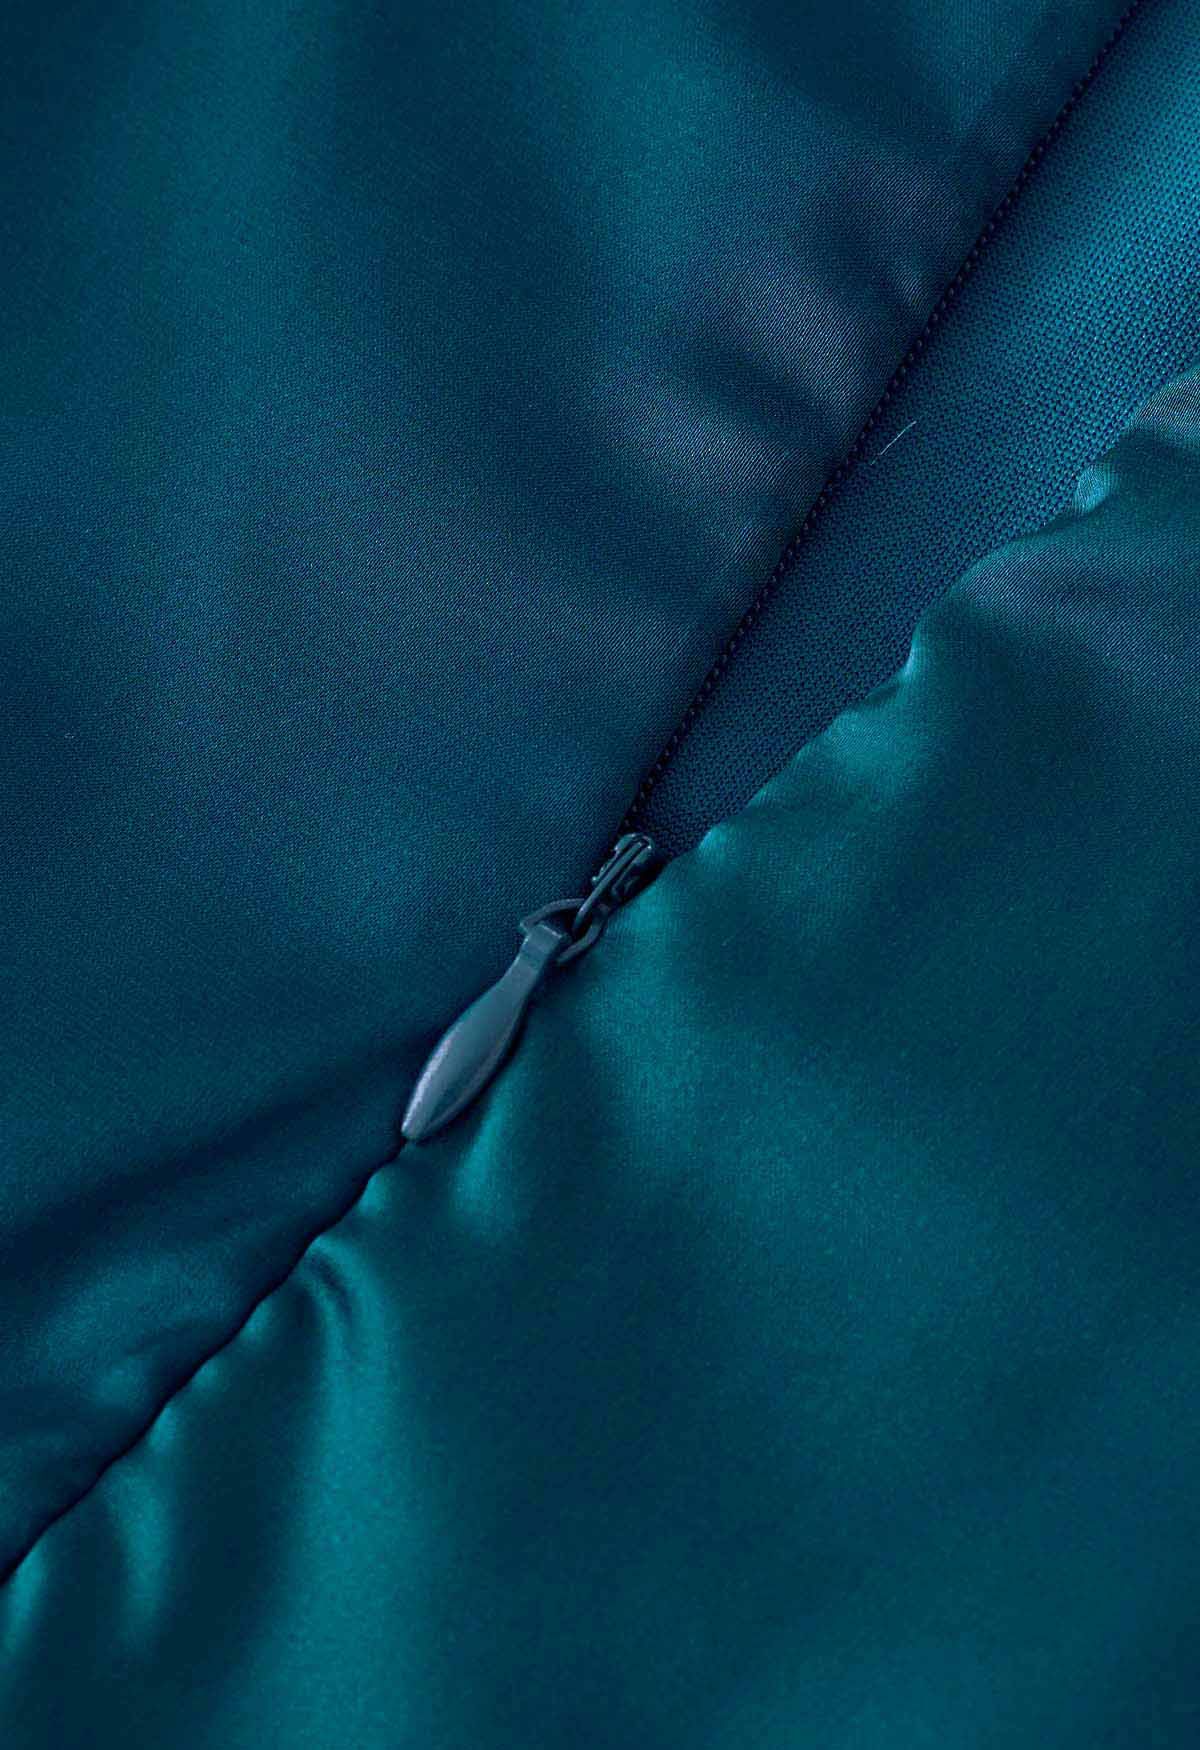 Ärmelloser Playsuit aus Satin mit asymmetrischem Rüschenausschnitt in Blaugrün